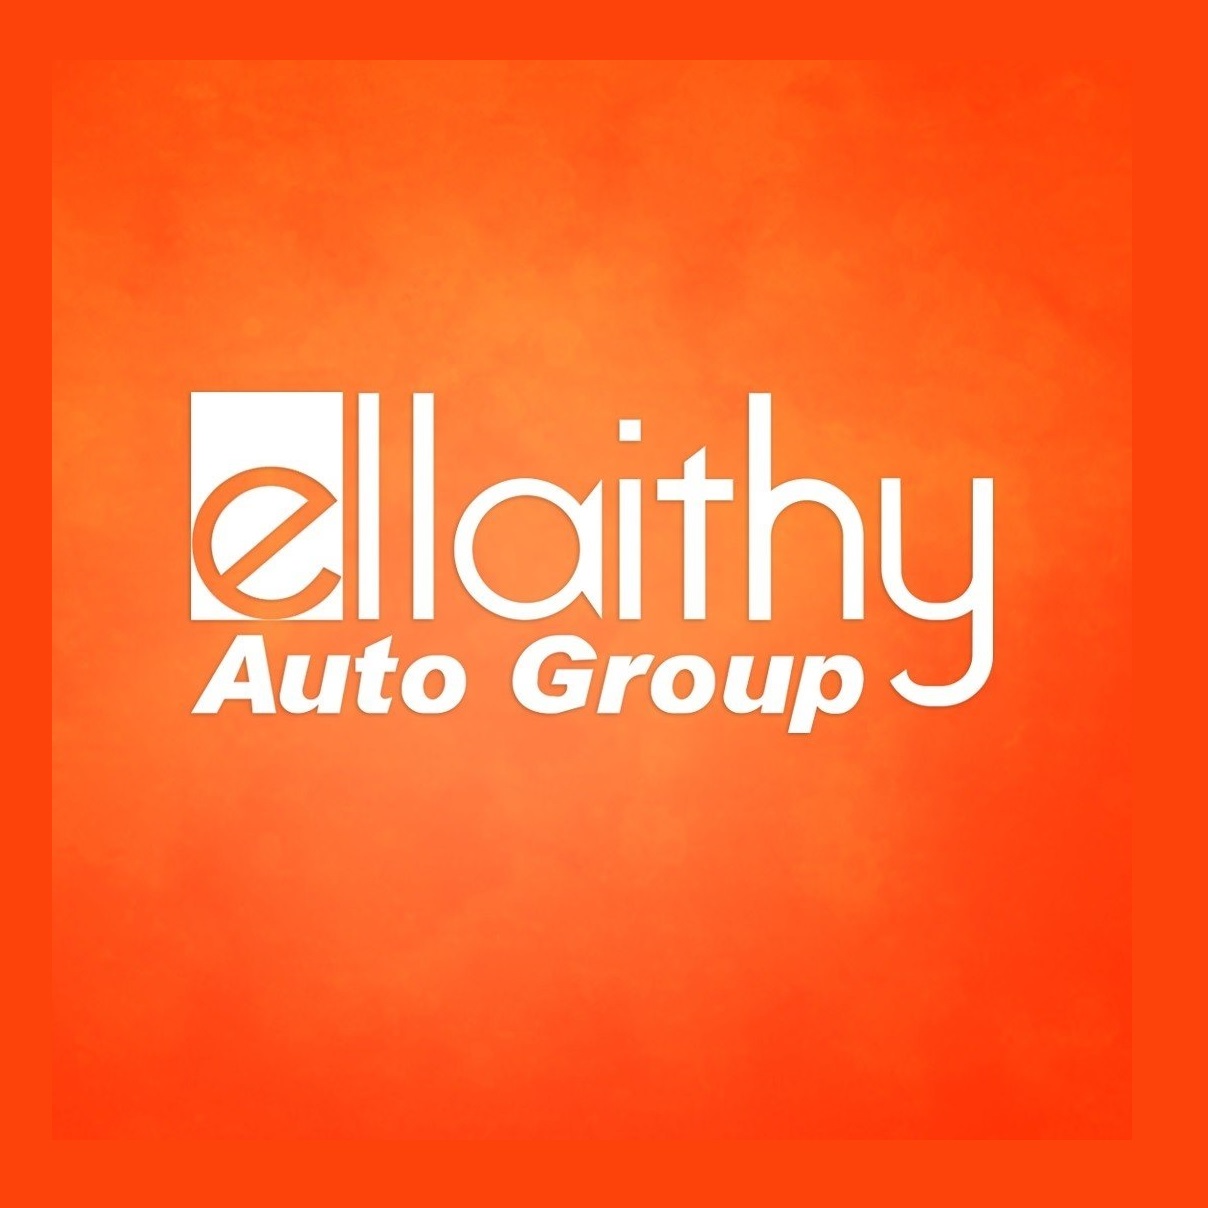 Ellaithy Group